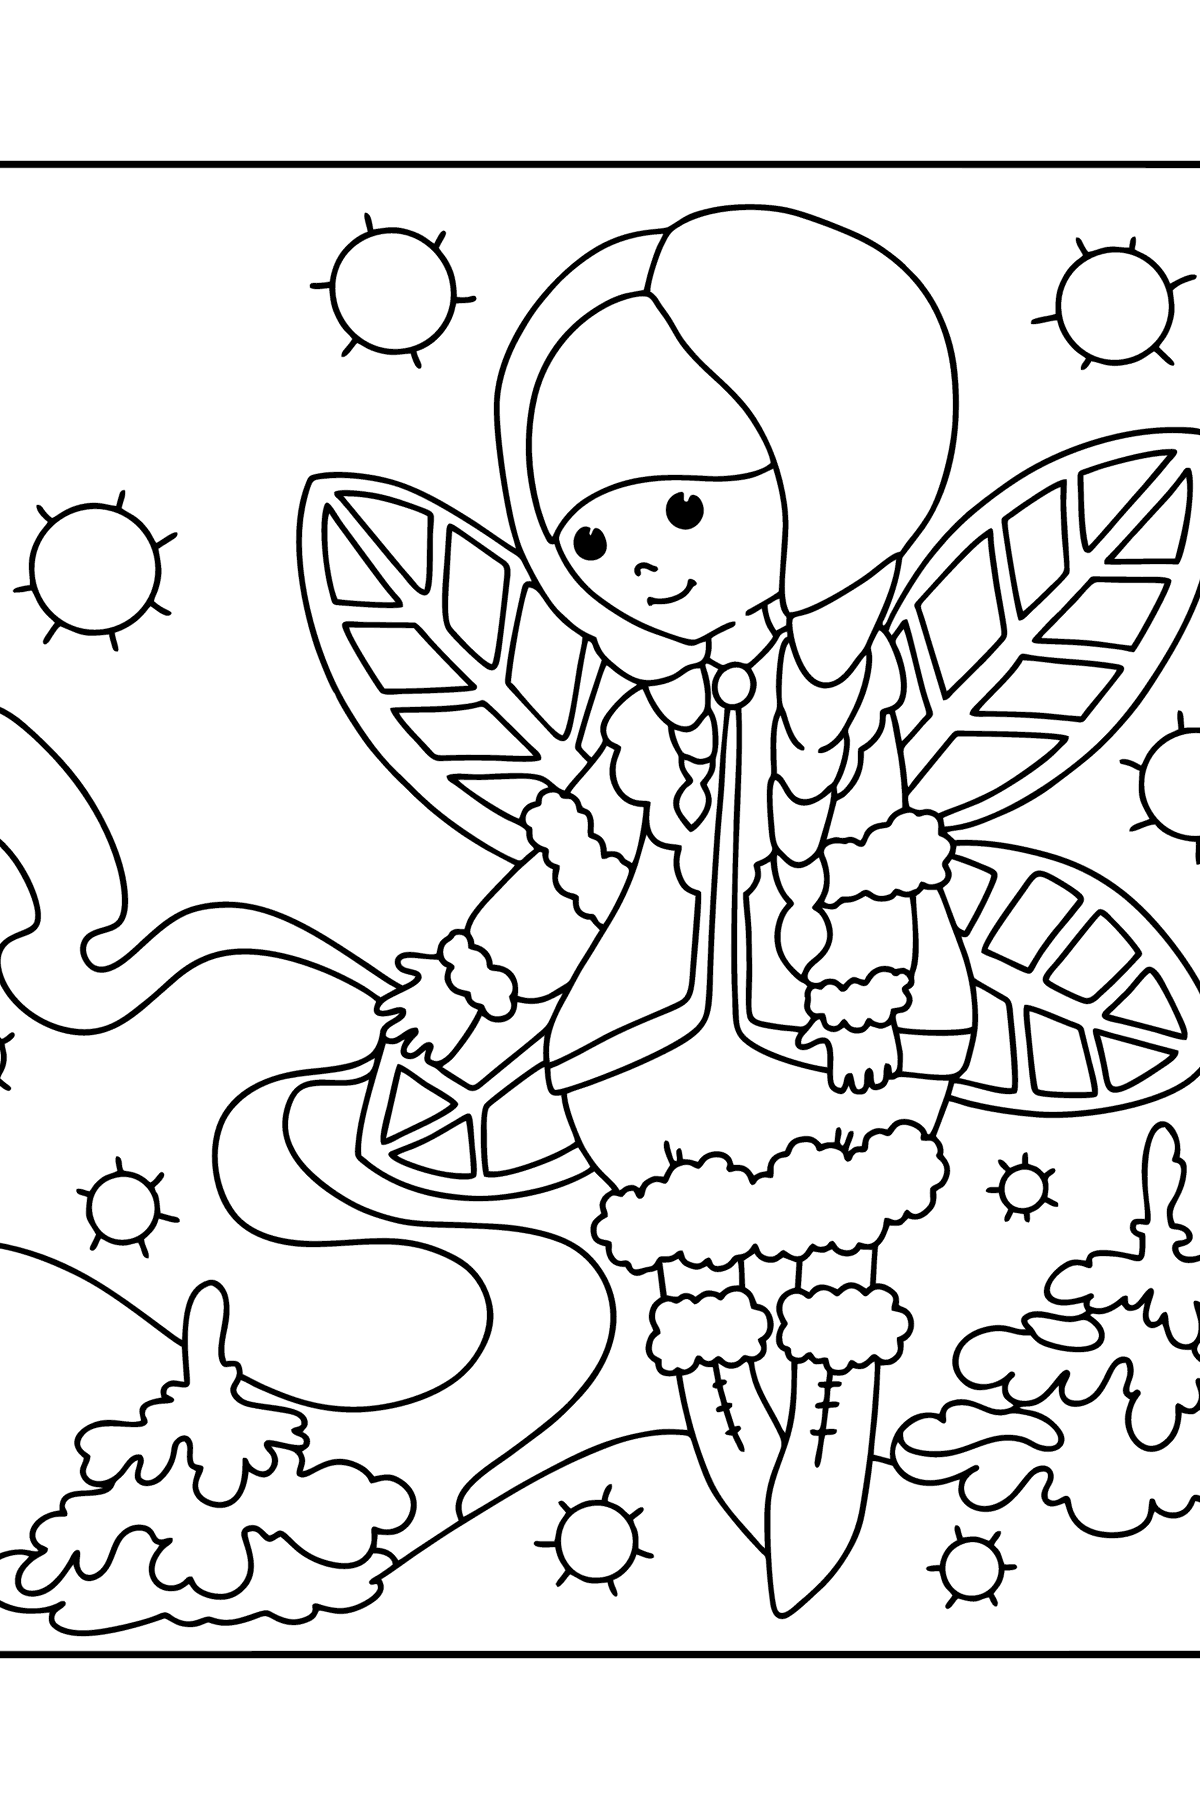 Desenho de Fada do Inverno para colorir - Imagens para Colorir para Crianças